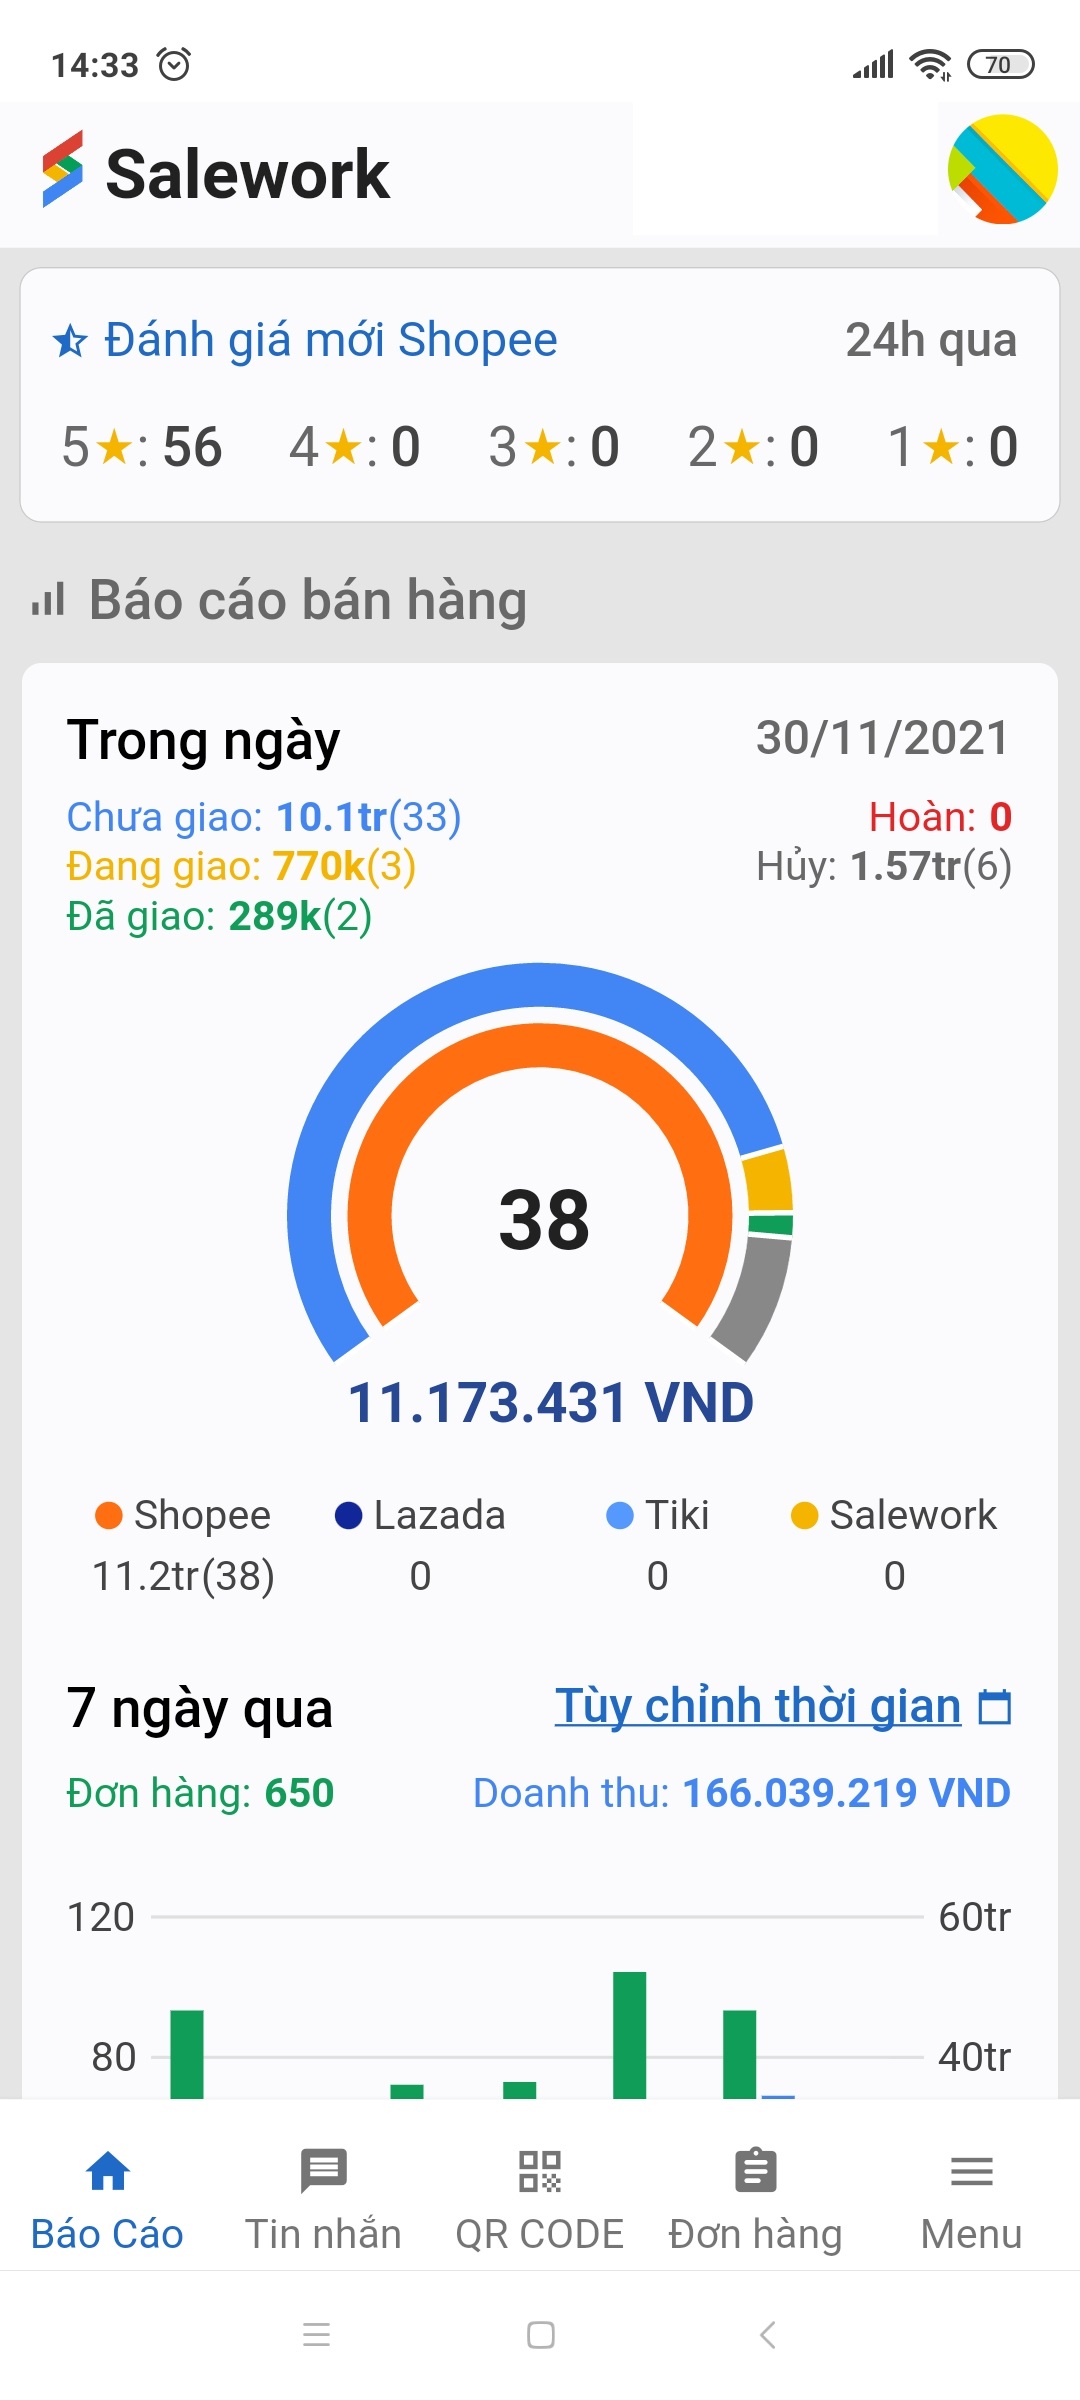 Salework app - Ứng dụng quản lý bán hàng đa kênh trên điện thoại tốt nhất tại Việt Nam - 32